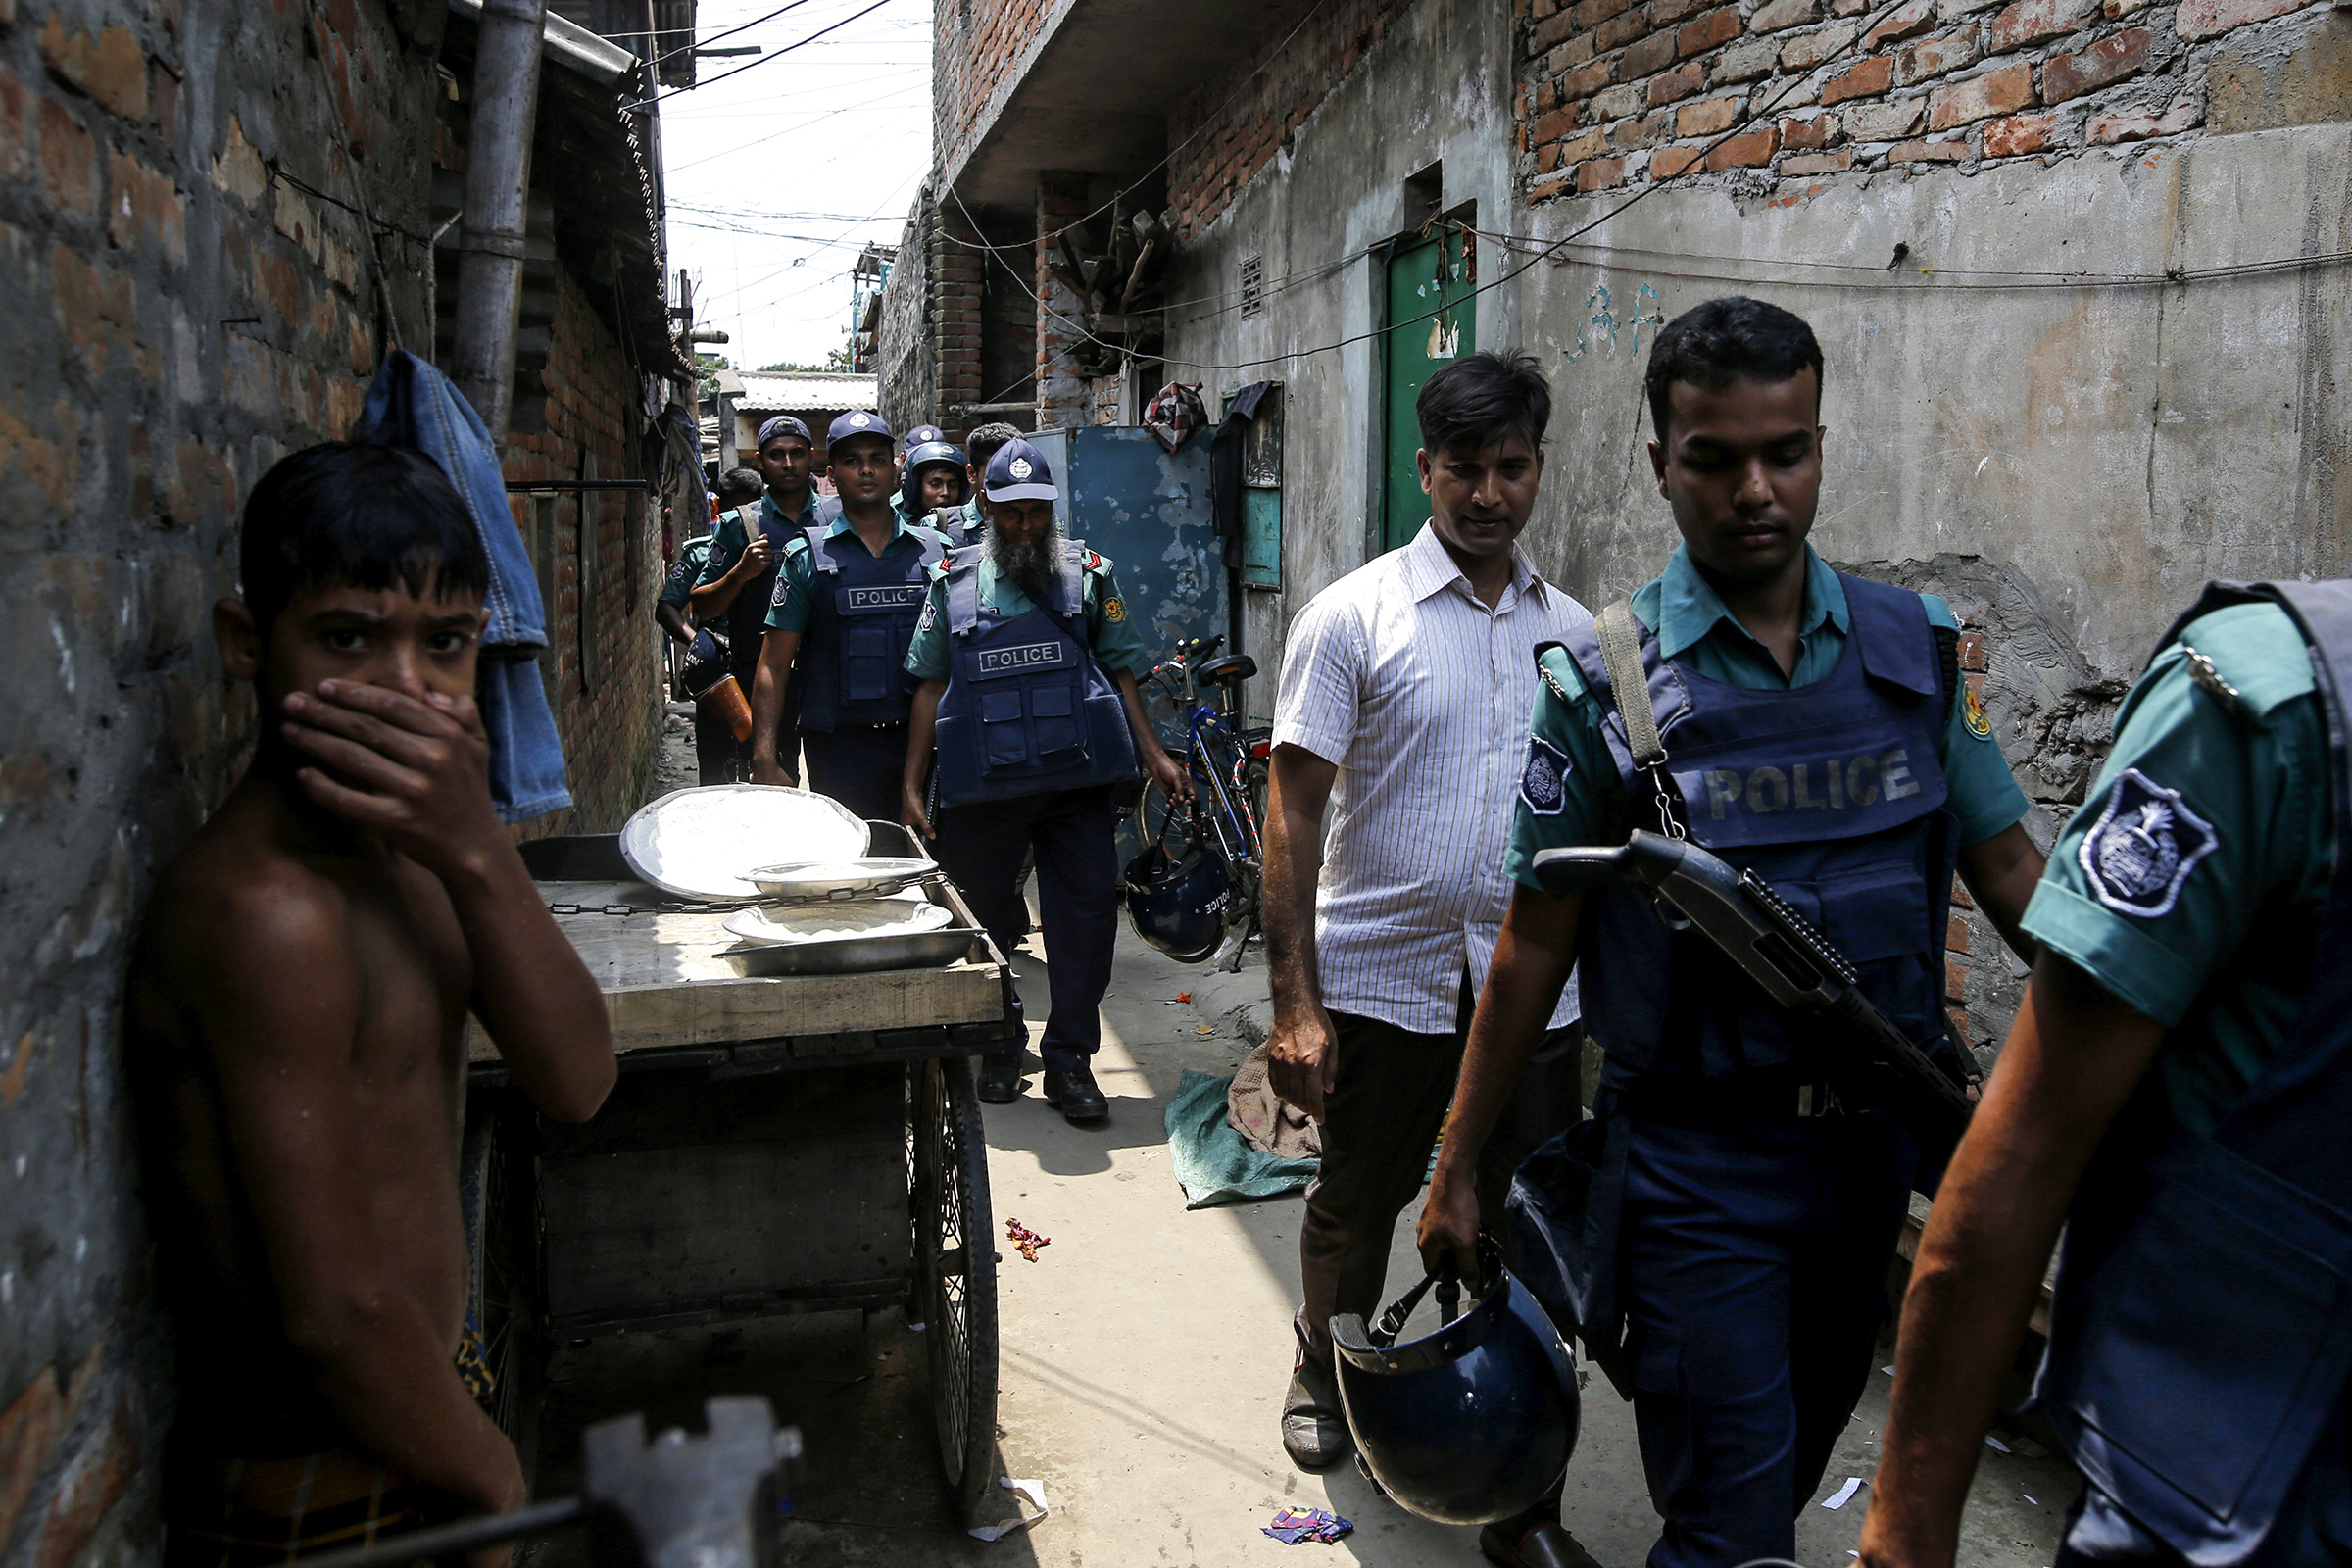 <p>В мае 2018 года правительство Бангладеш объявило о начале большой антинаркотической кампании. Критику международного сообщества&nbsp;вызвали внесудебные убийства предполагаемых наркоторговцев. За первую неделю рейдов полиция застрелила около 50 подозреваемых в продаже наркотиков, а две недели спустя число погибших <a href="https://rg.ru/2018/07/17/antinarkoticheskaia-kampaniia-v-bangladesh-unesla-zhizni-200-chelovek.html">превысило</a> 130 человек</p>

<p><br />
&nbsp;</p>
